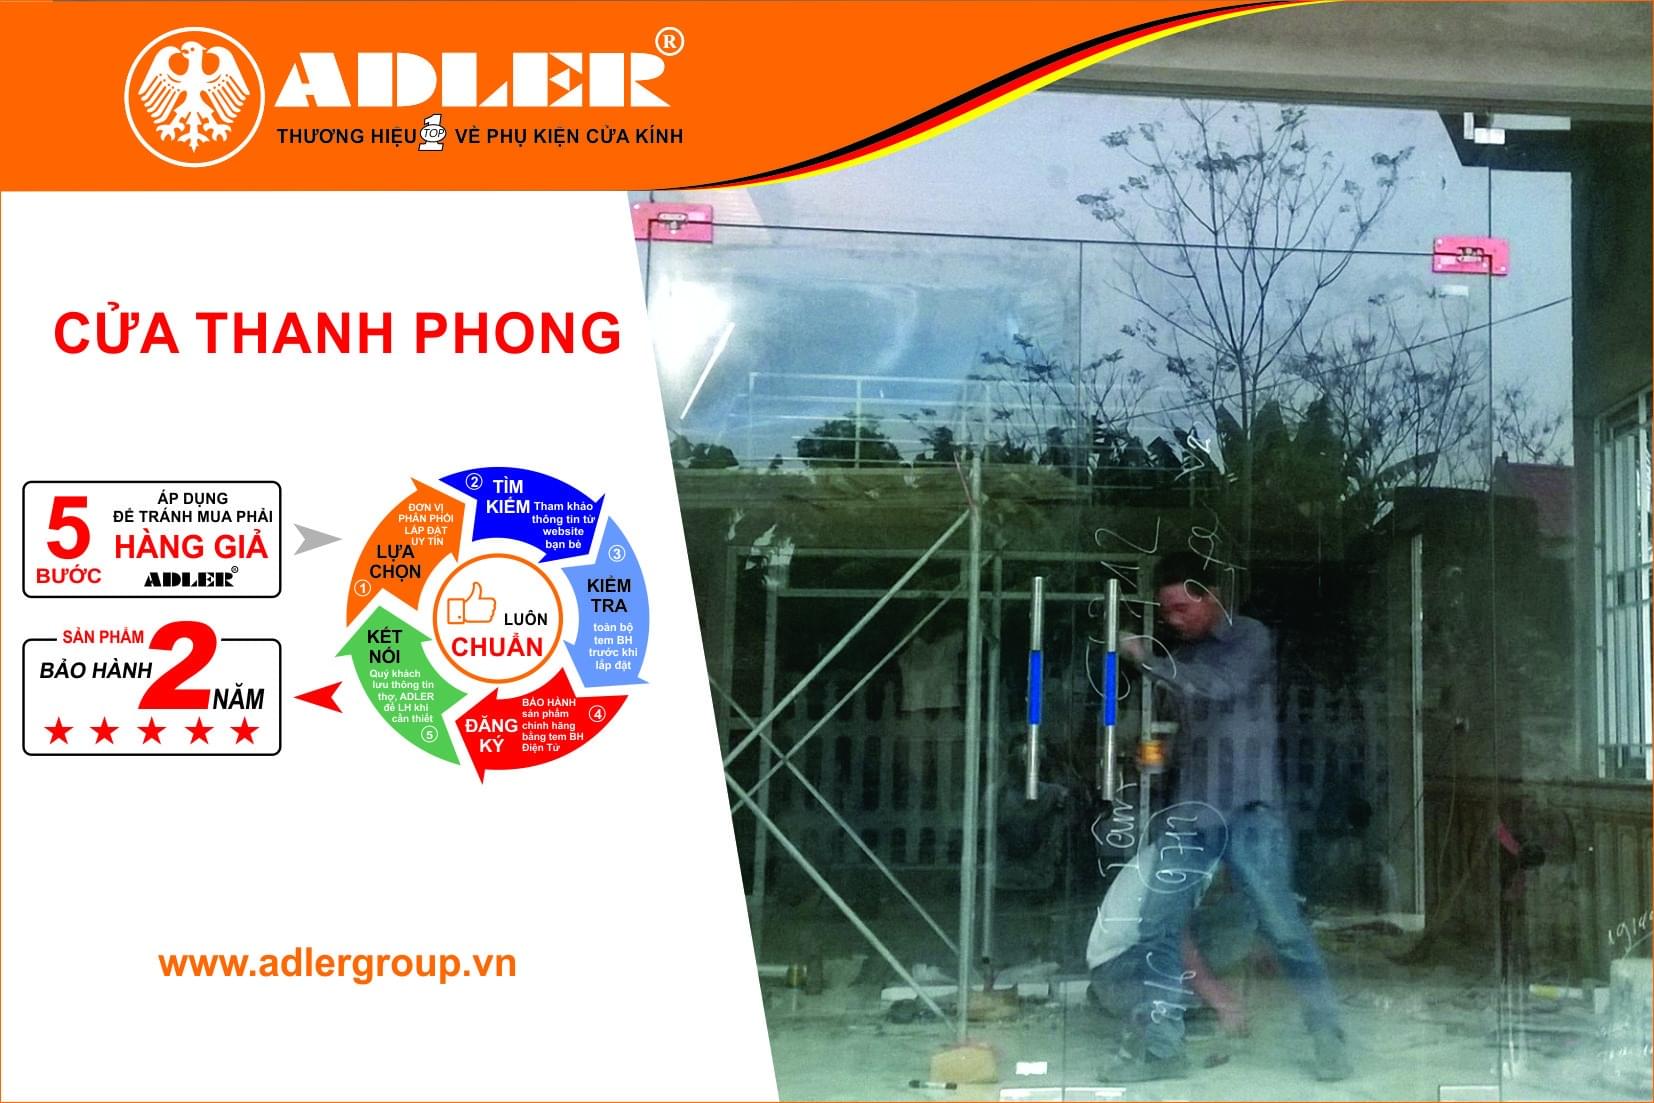 Bộ cửa kính đẹp rạng ngời khi trang hoàng với sản phẩm ADLER dưới bàn tay tài hoa của anh thợ cửa Thanh Phong